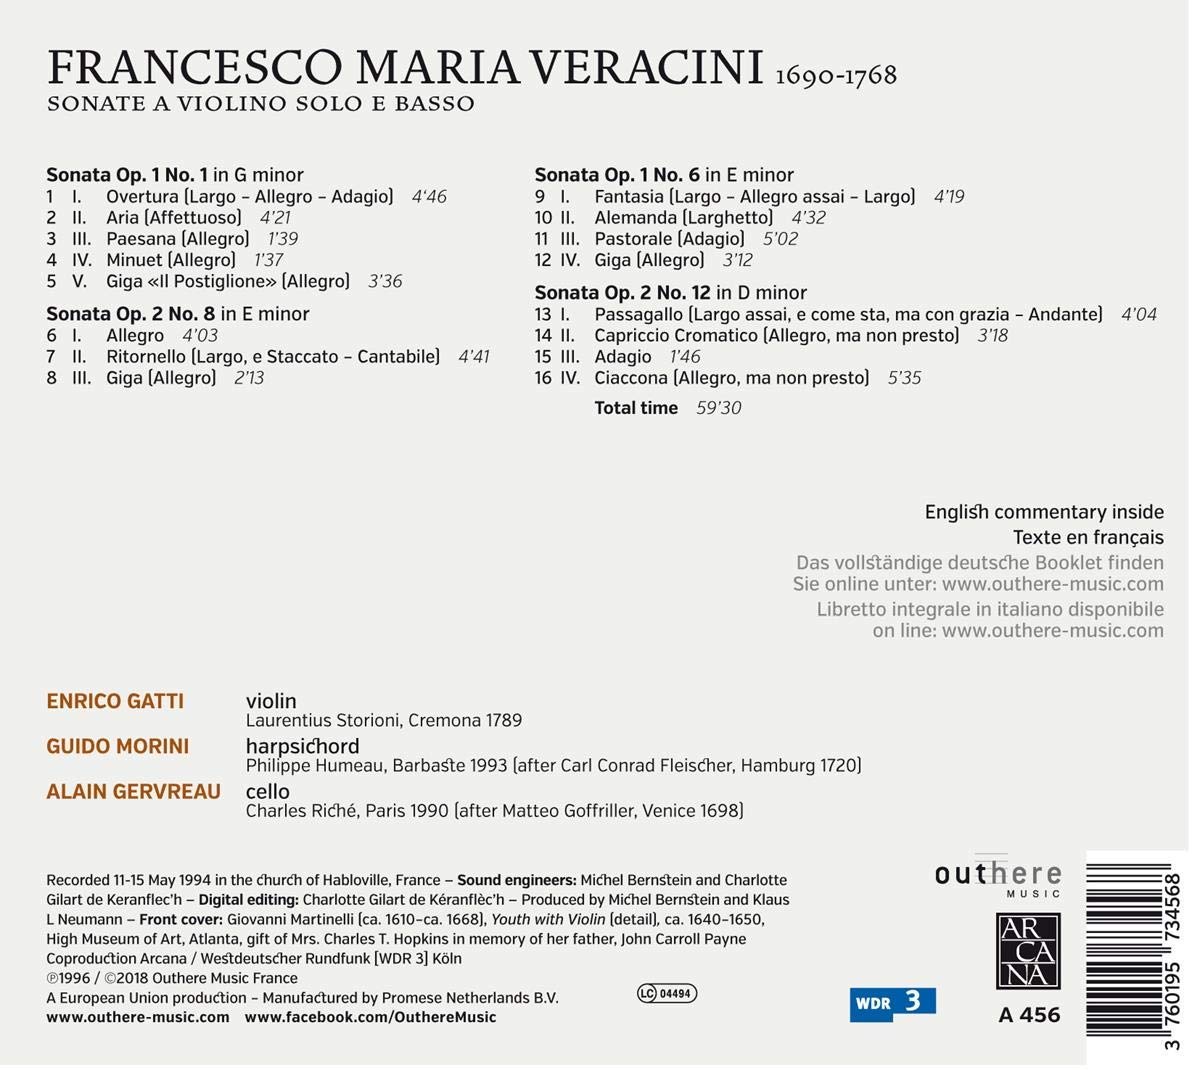 Enrico Gatti 베라치니: 바이올린 소나타 (Veracini: Sonate A Violino Solo E Basso)